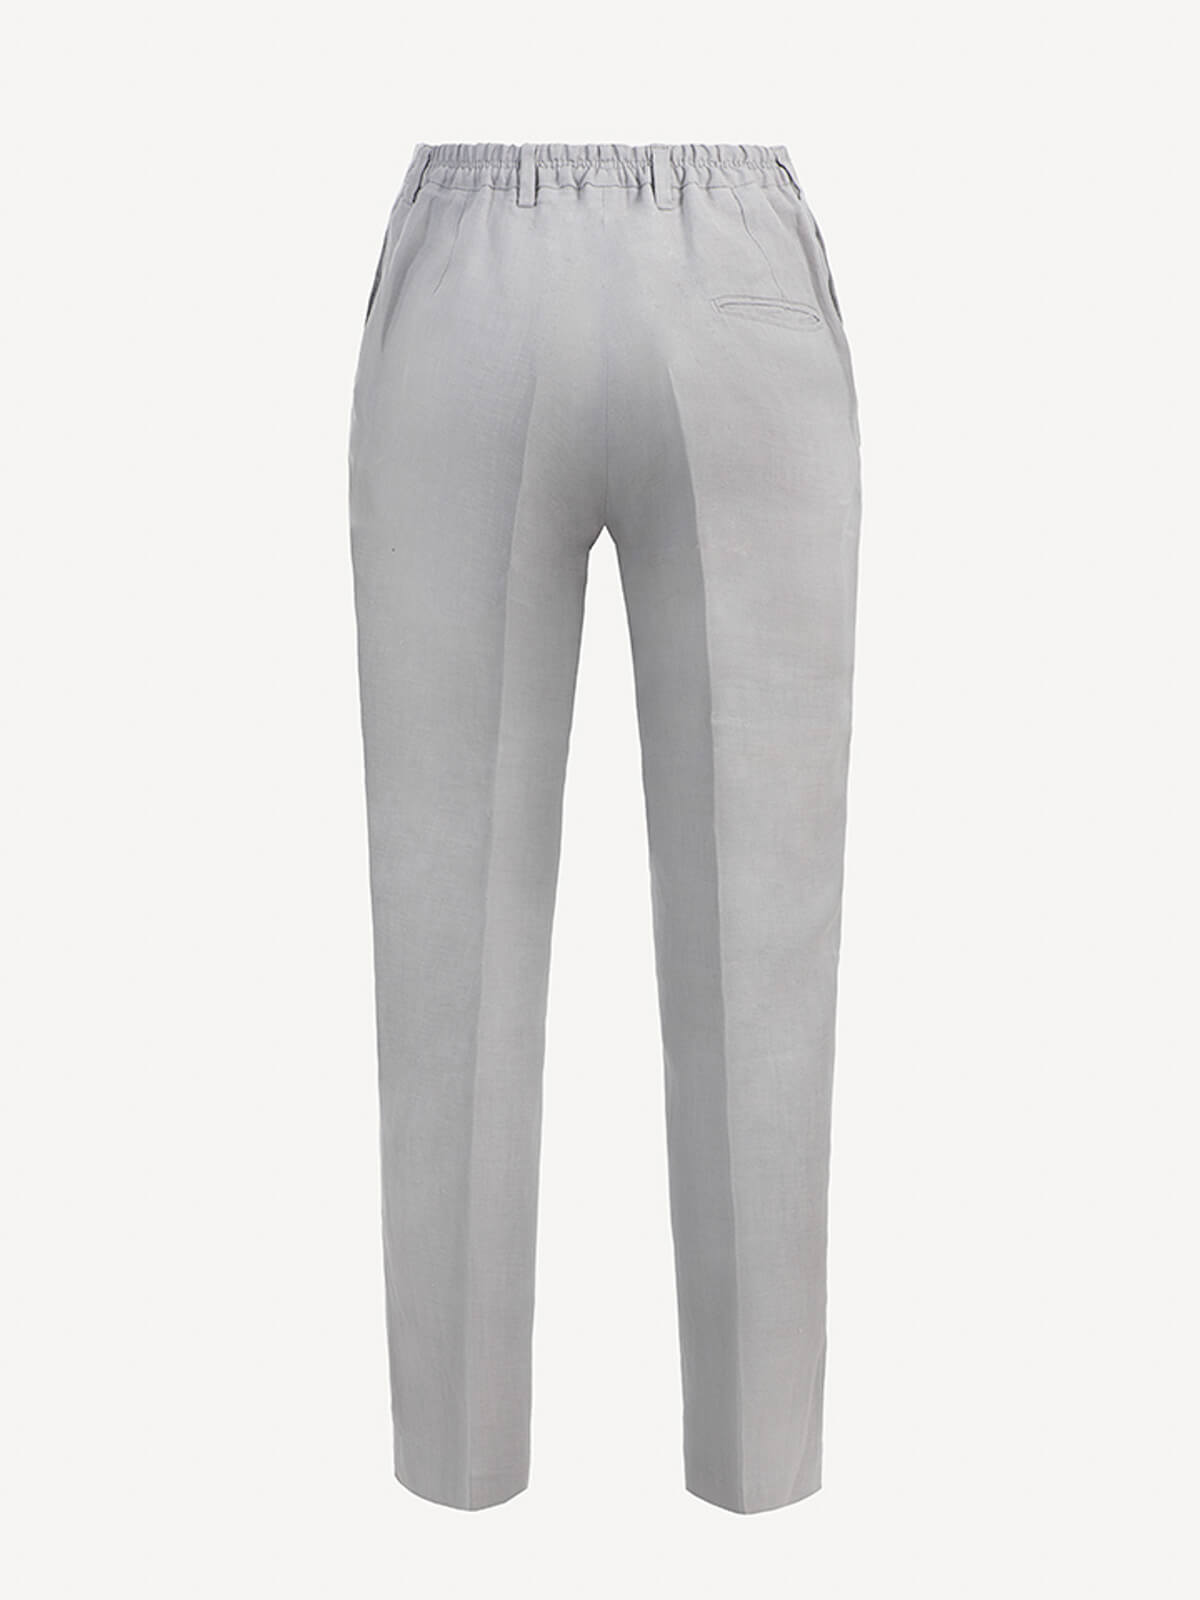 Pantalone Martin 100% Capri light grey linen pant back